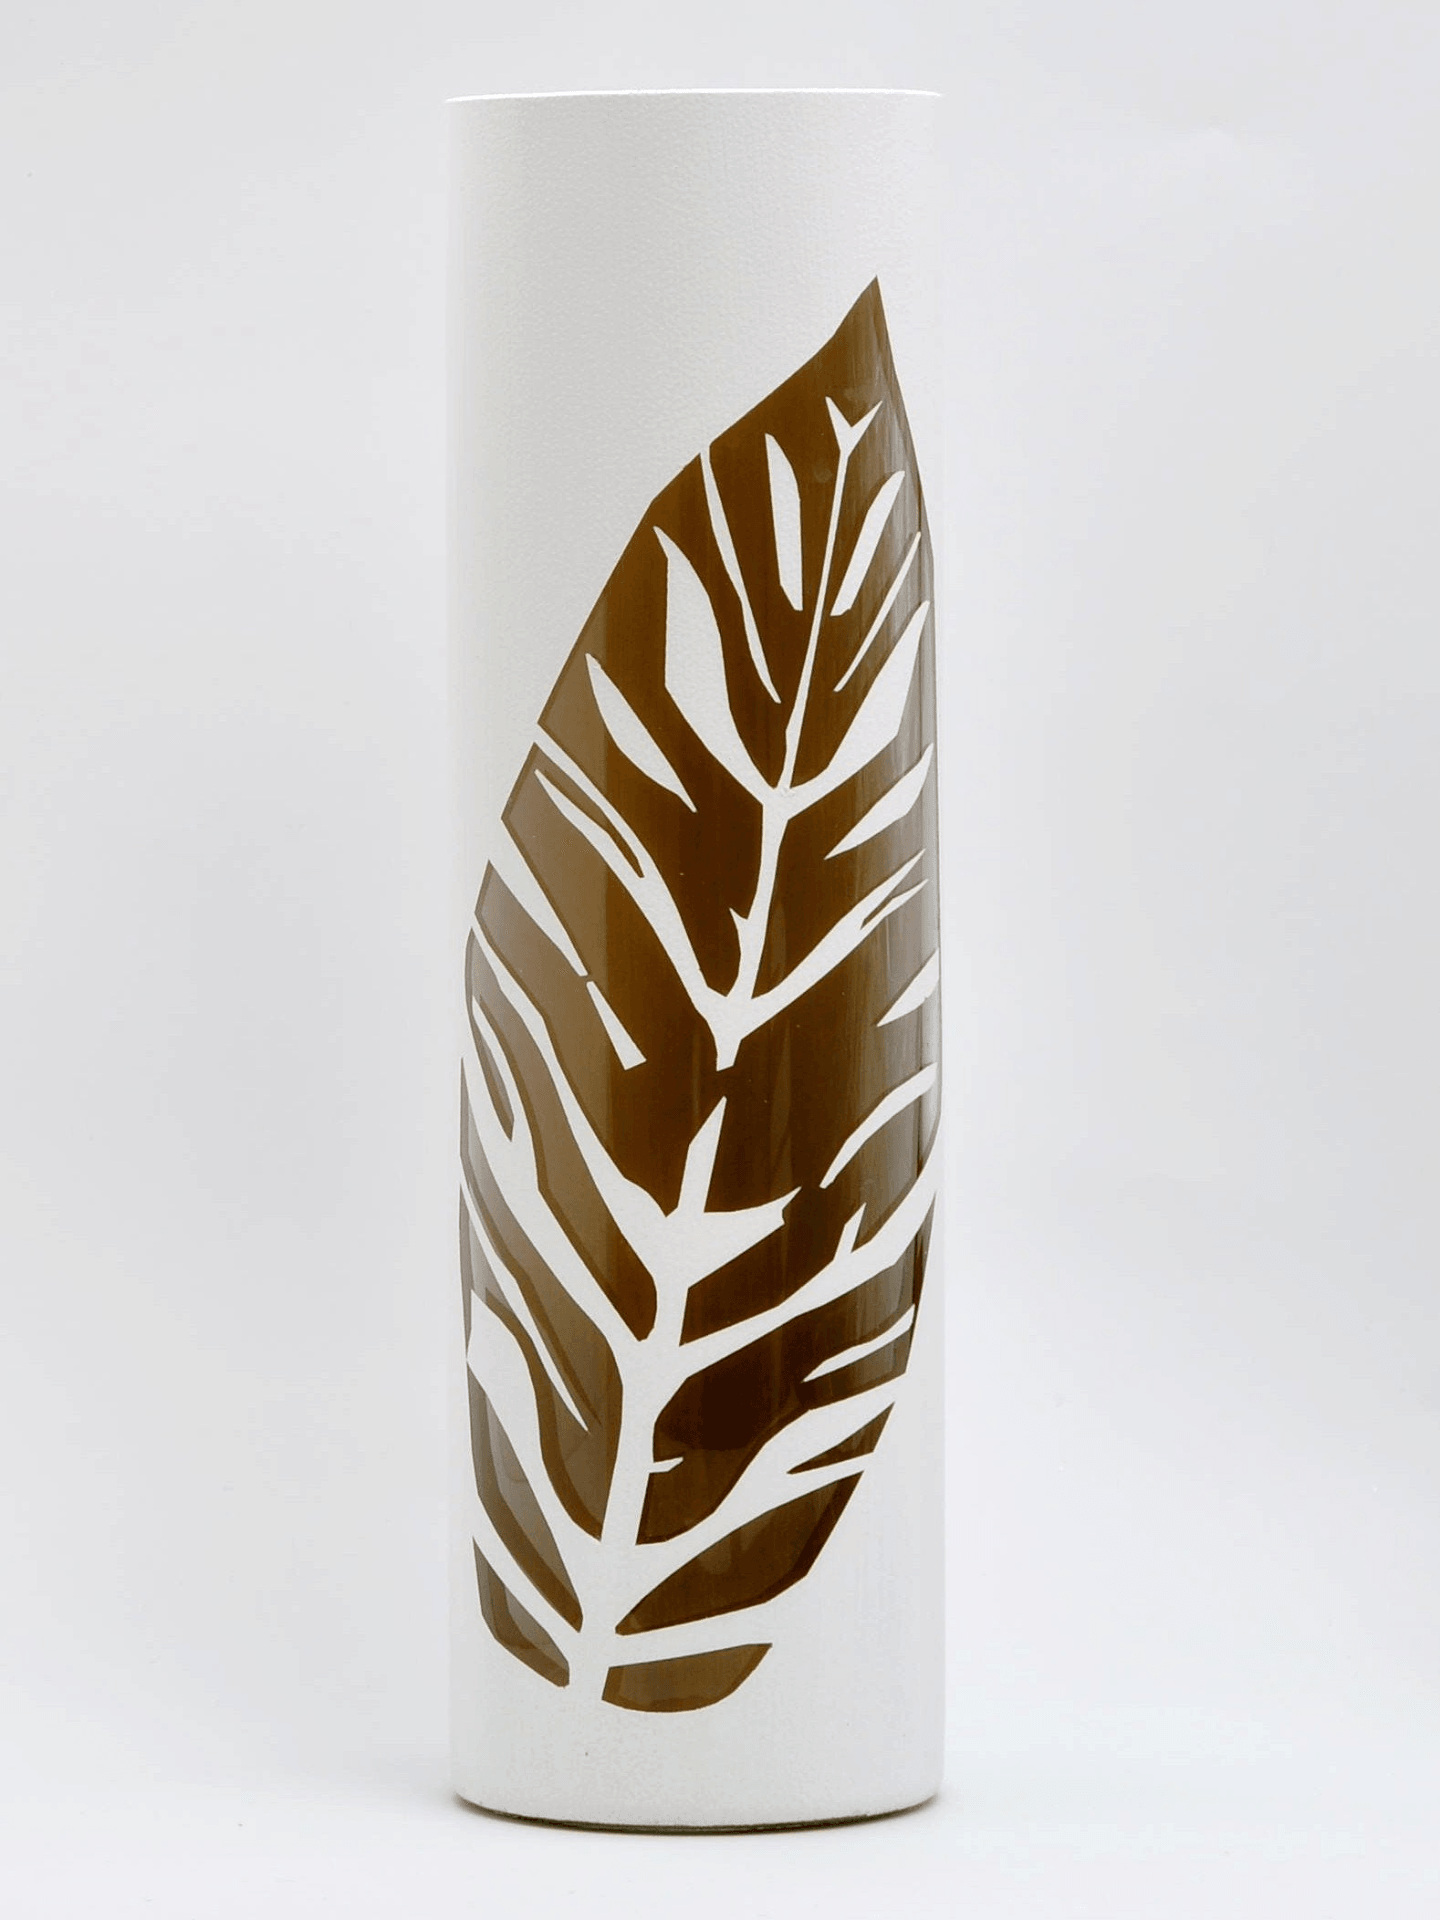 Art Decorated | Glass Vase for Flowers | Cylinder Vase | Interior Design | Home Decor | Large Floor Vase | 7017/400/sh115  